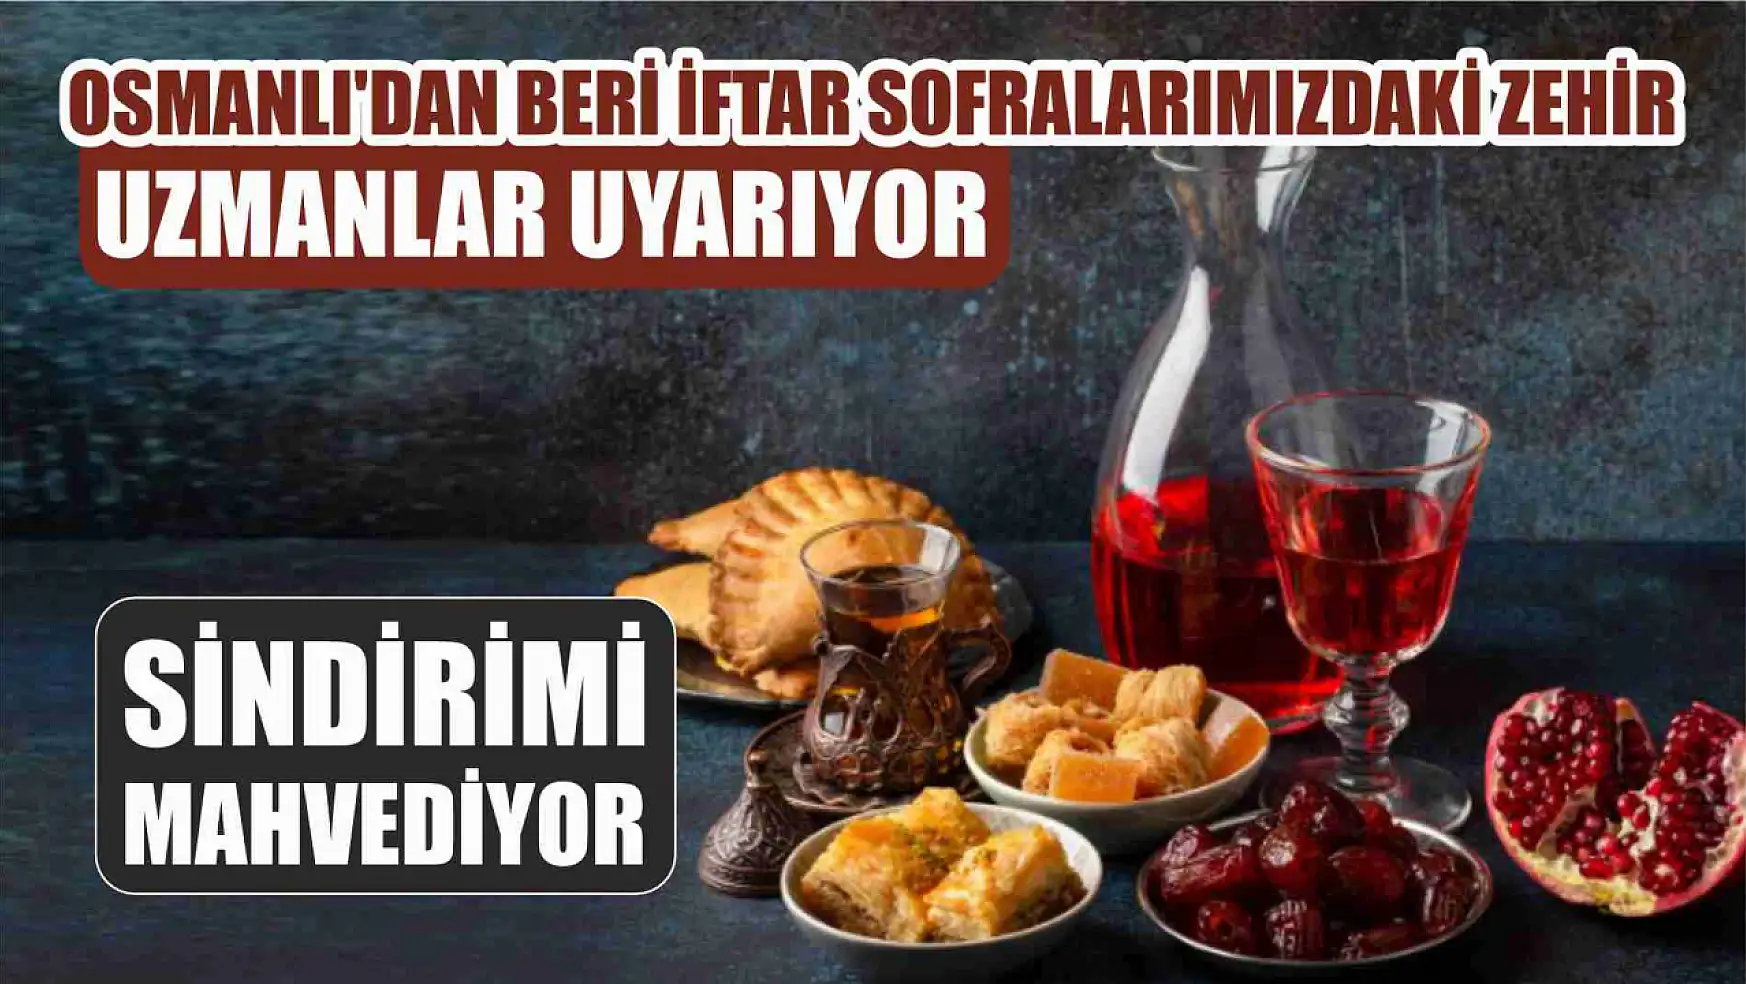 Osmanlı'dan beri iftar sofralarımızdaki zehir, uzmanlar uyarıyor: Sindirimi mahvediyor